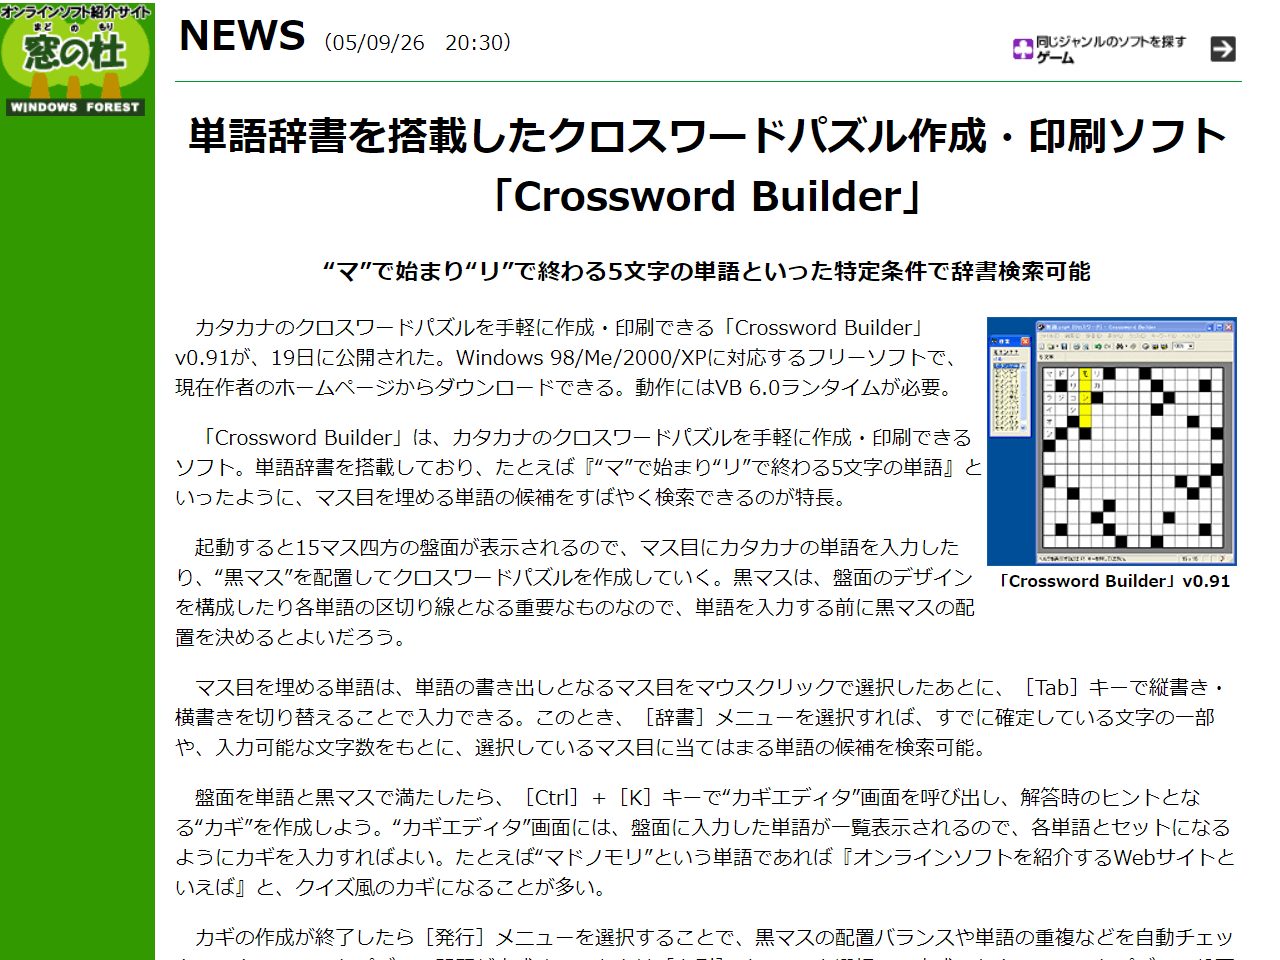 窓の杜ニュース「Crossword Builder」